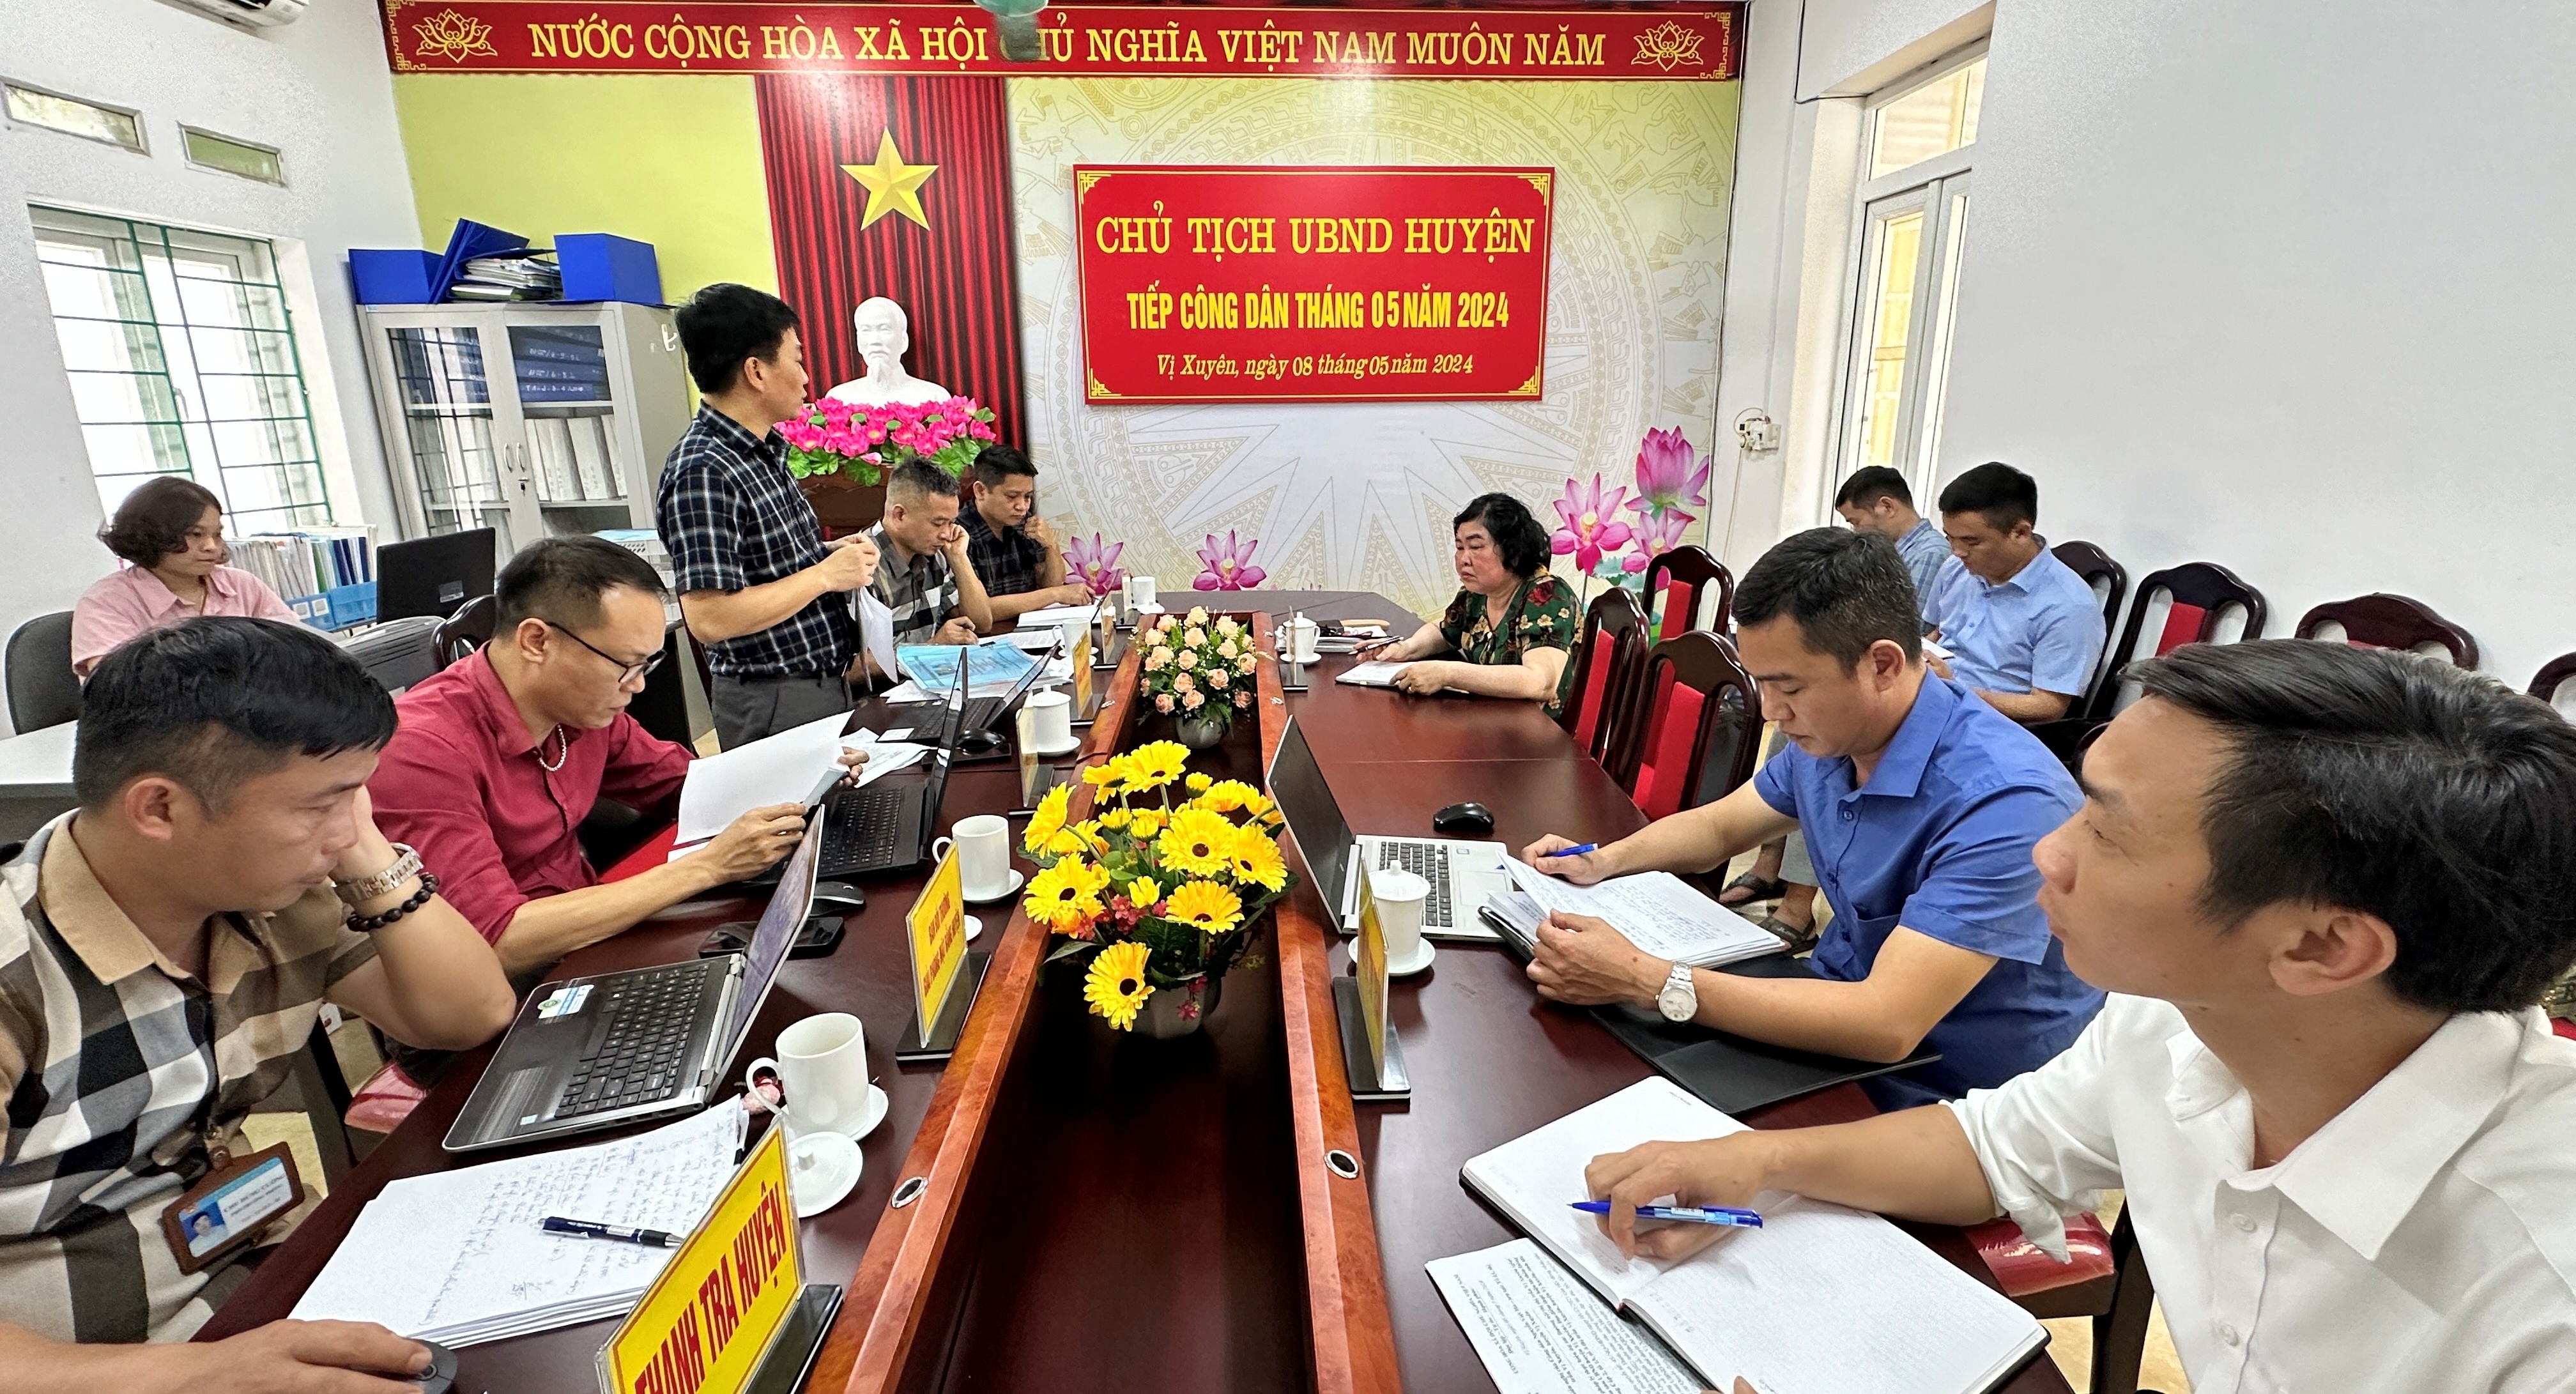 Chủ tịch UBND huyện Hoàng Thanh Tịnh tiếp công dân định kỳ tháng 5